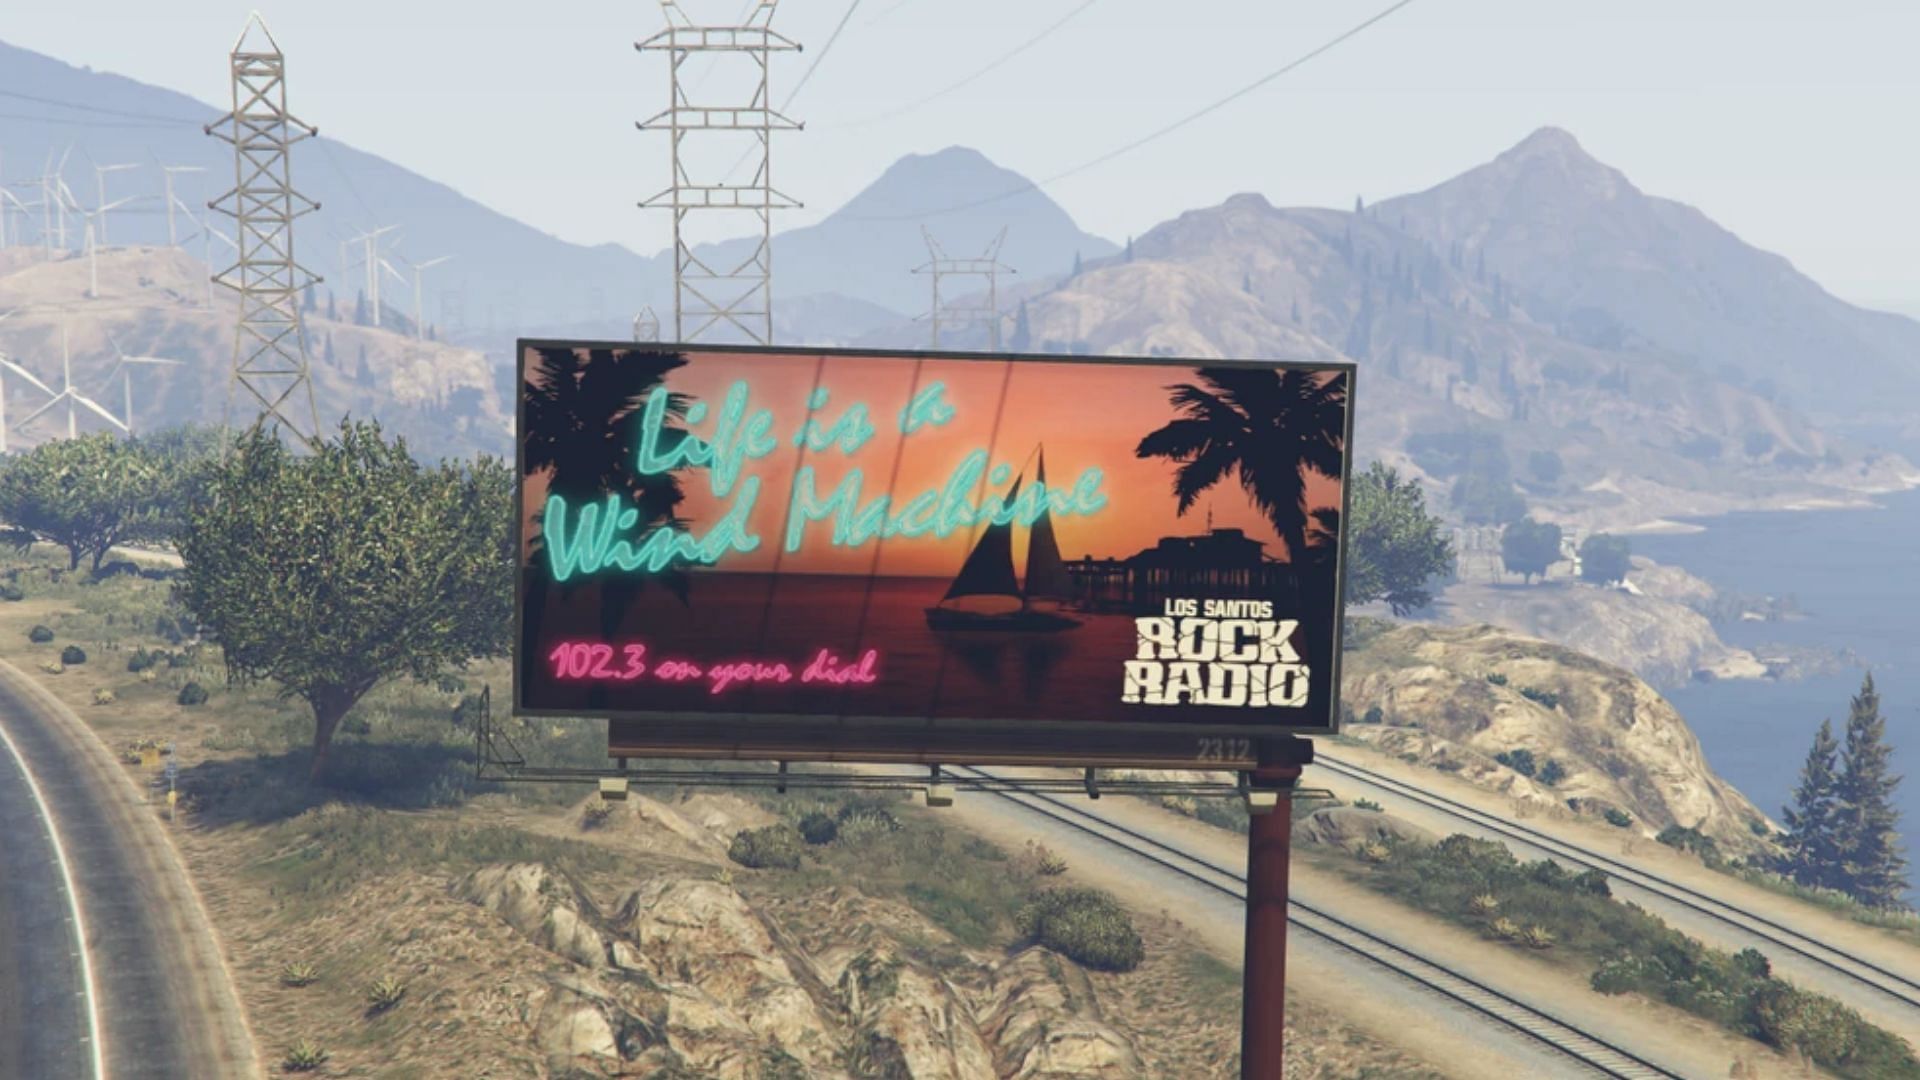 The Los Santos Rock Radio billboard in Grand Theft Auto 5. (Image via GTA Wiki)